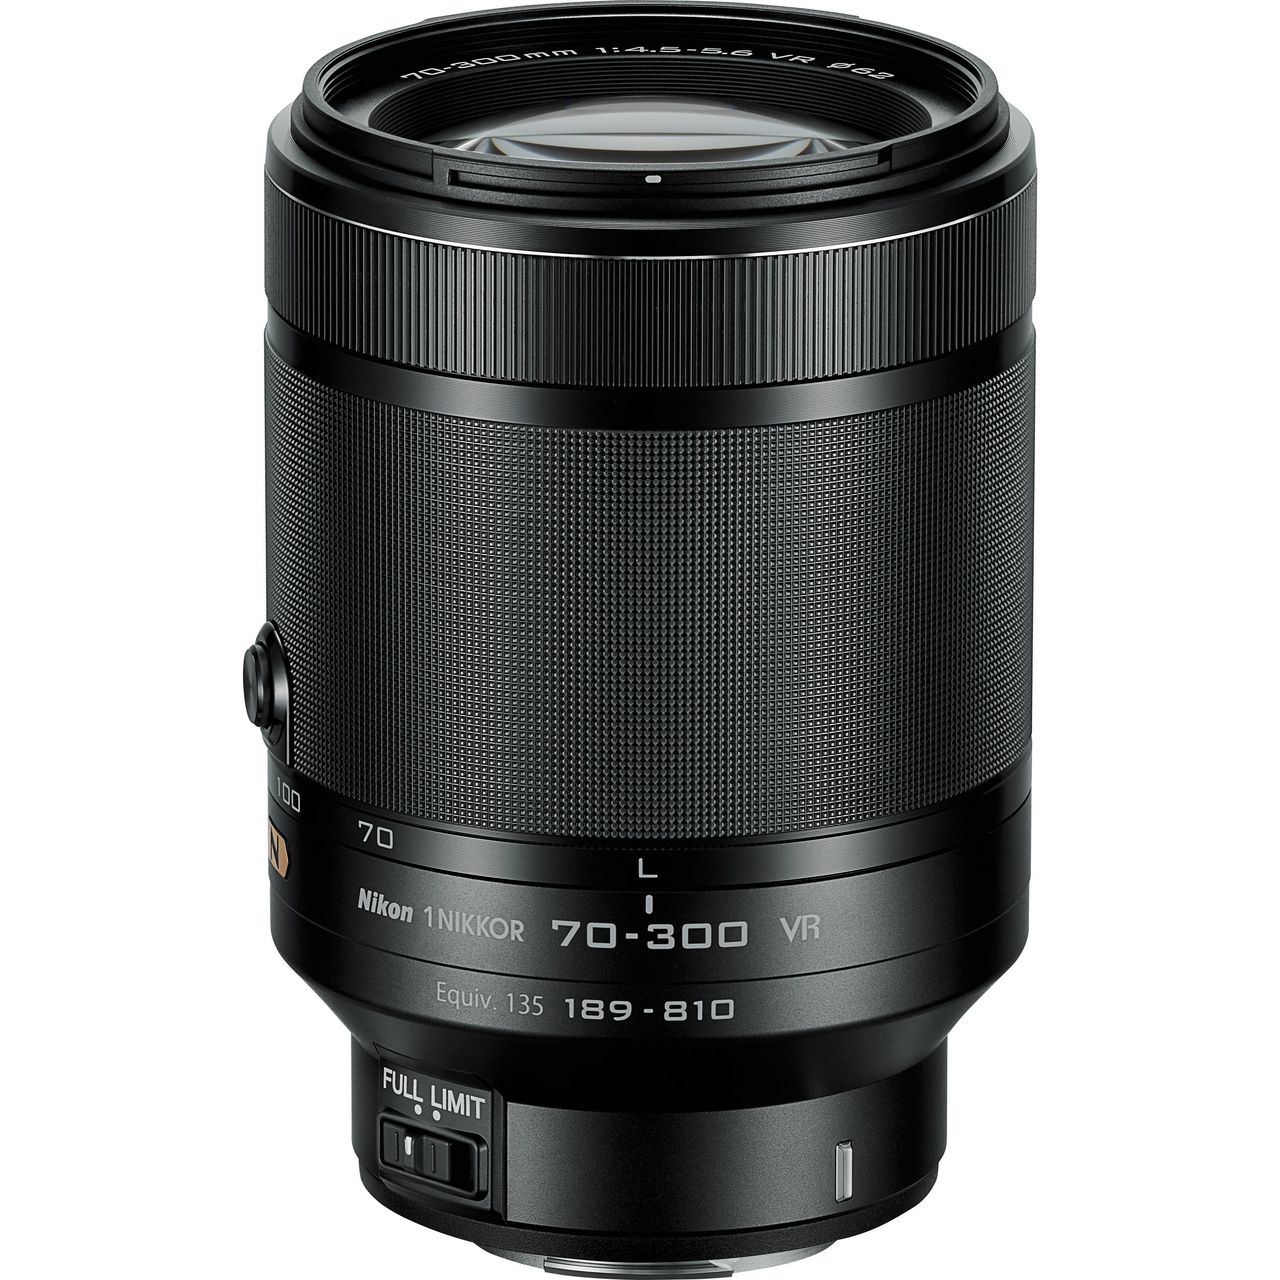 Nikon 1 Nikkor VR 70-300mm f/4.5-5.6